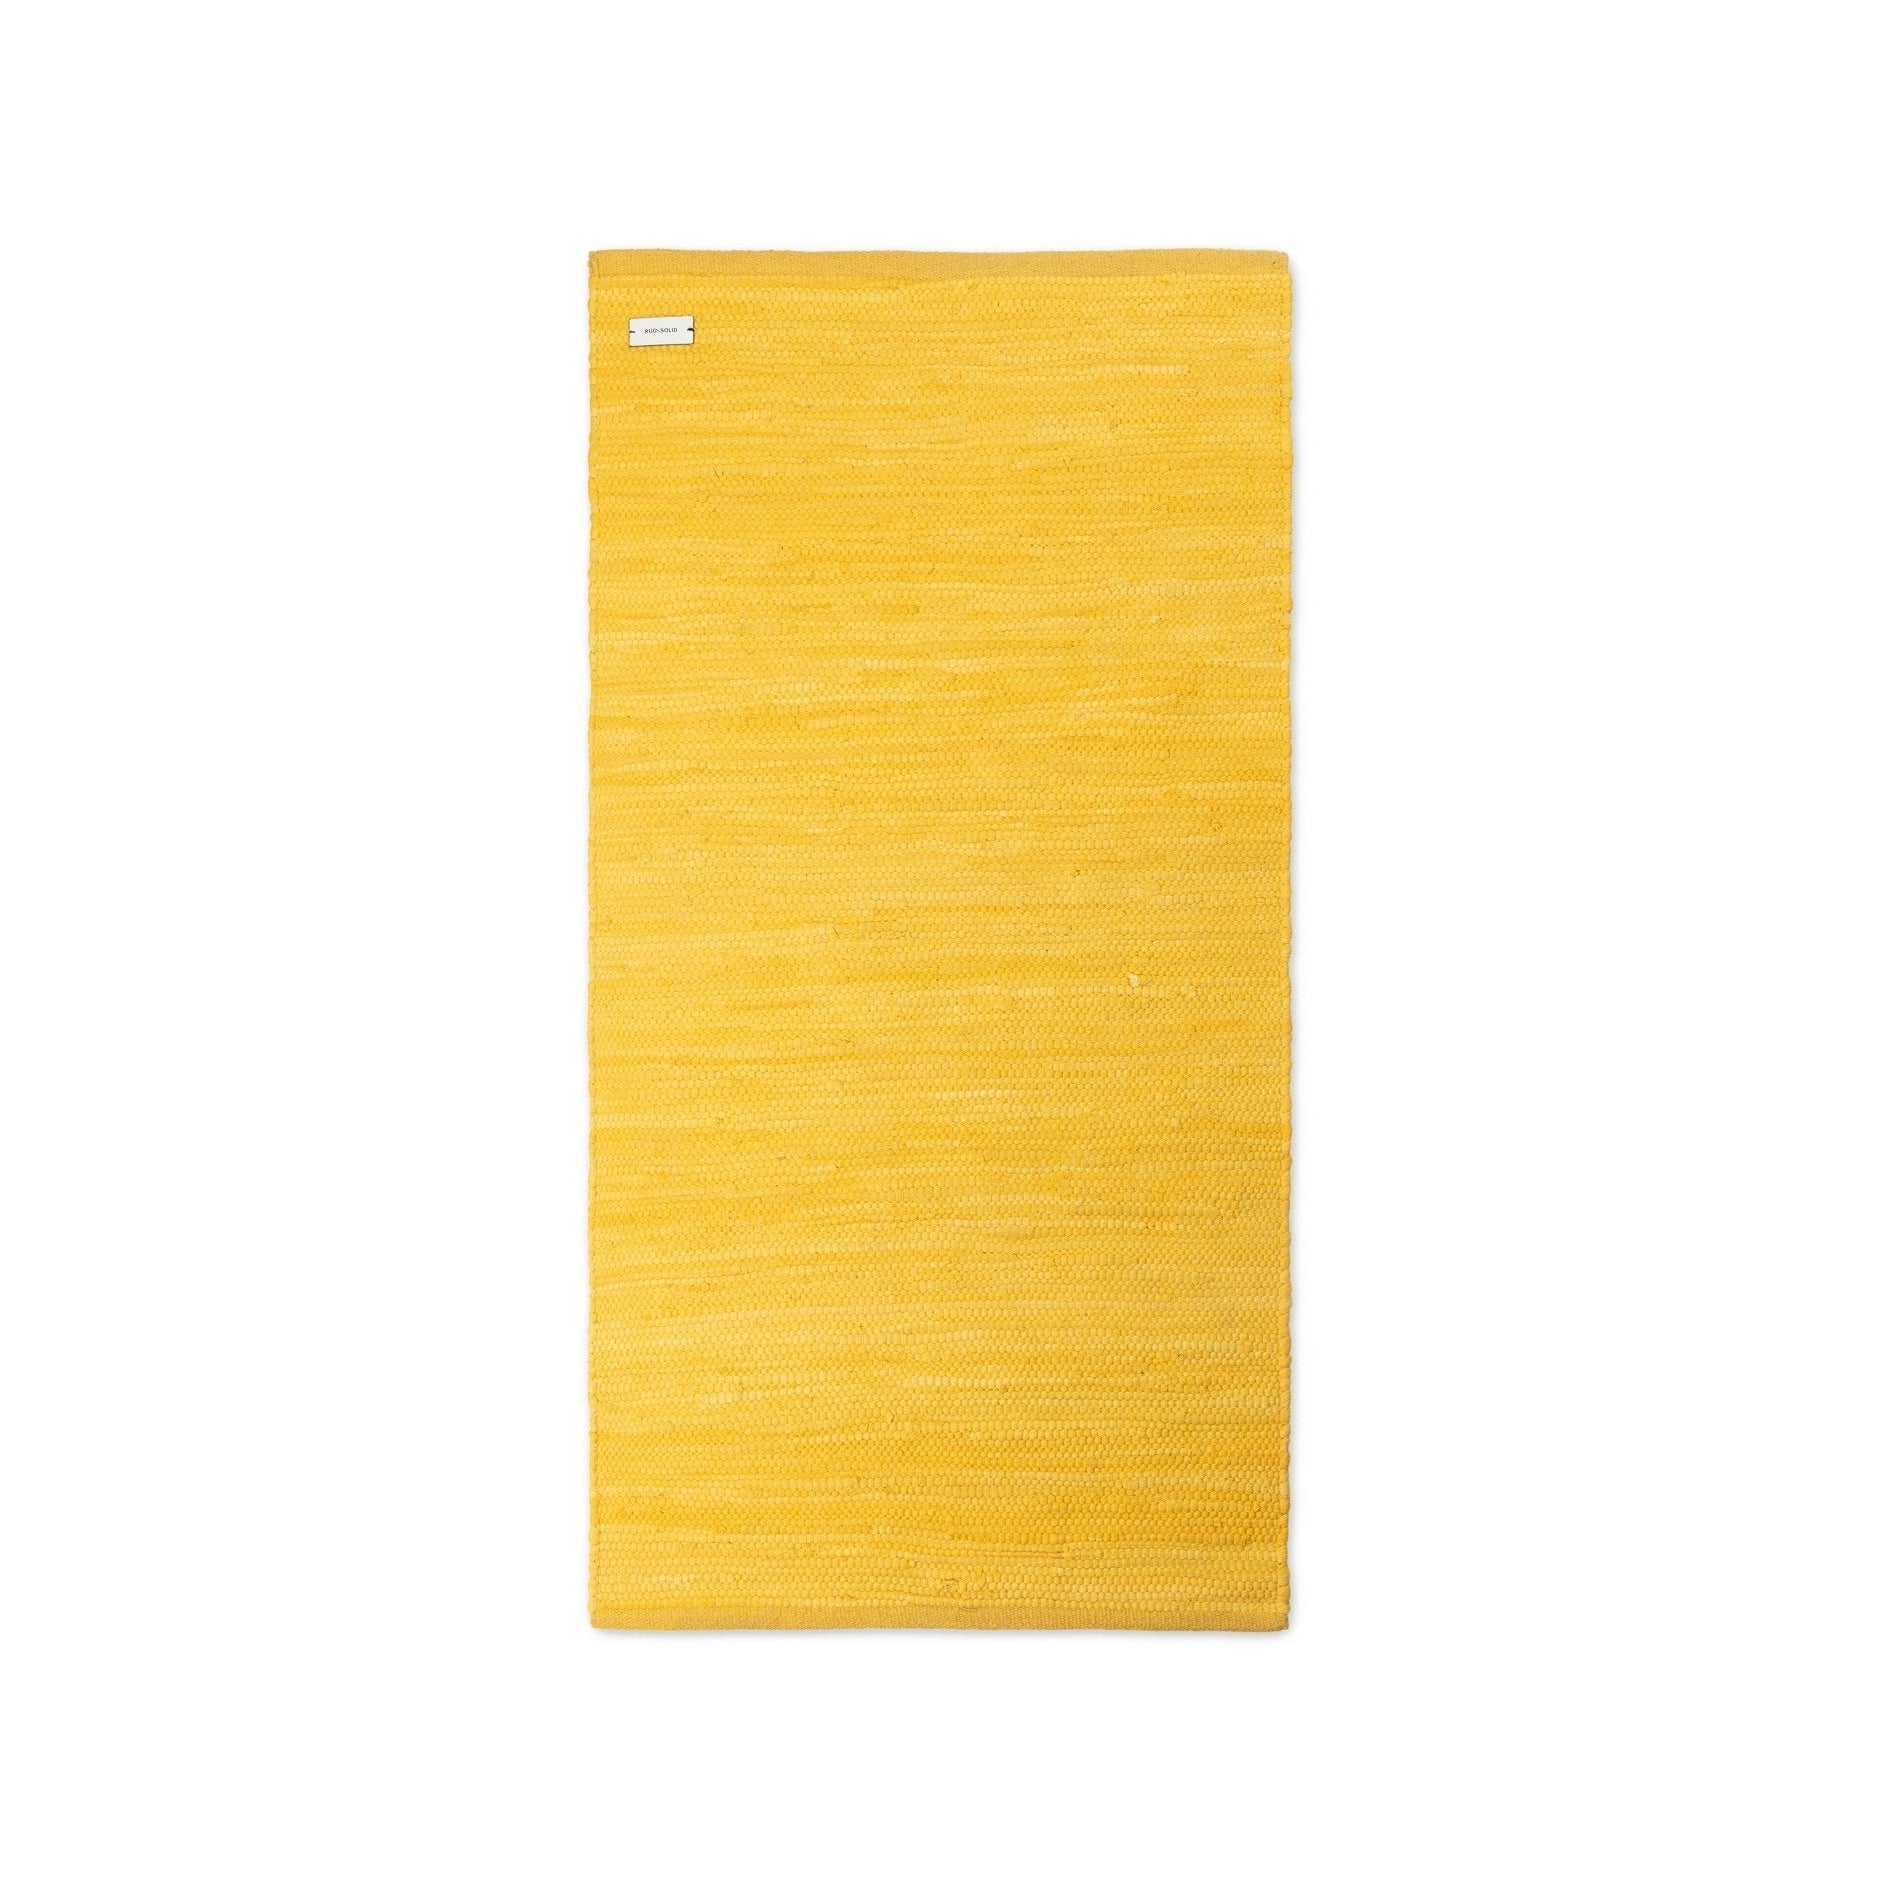 Rug Solid Baumwollteppich Regenmantel Gelb, 60 x 90 cm